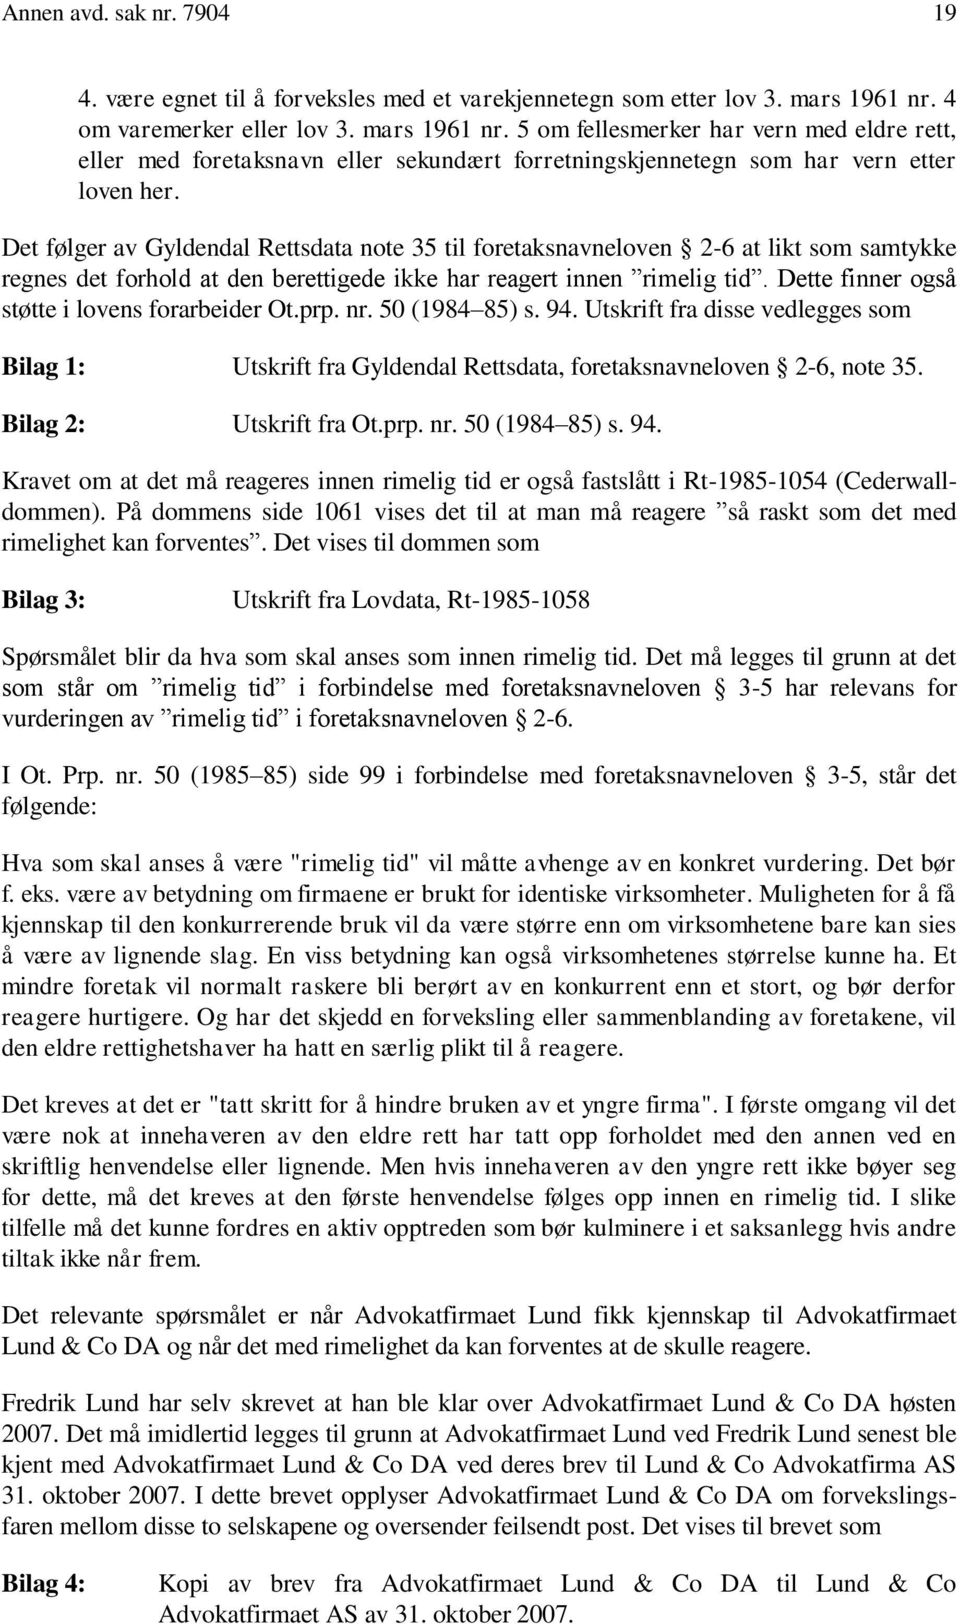 Det følger av Gyldendal Rettsdata note 35 til foretaksnavneloven 2-6 at likt som samtykke regnes det forhold at den berettigede ikke har reagert innen rimelig tid.